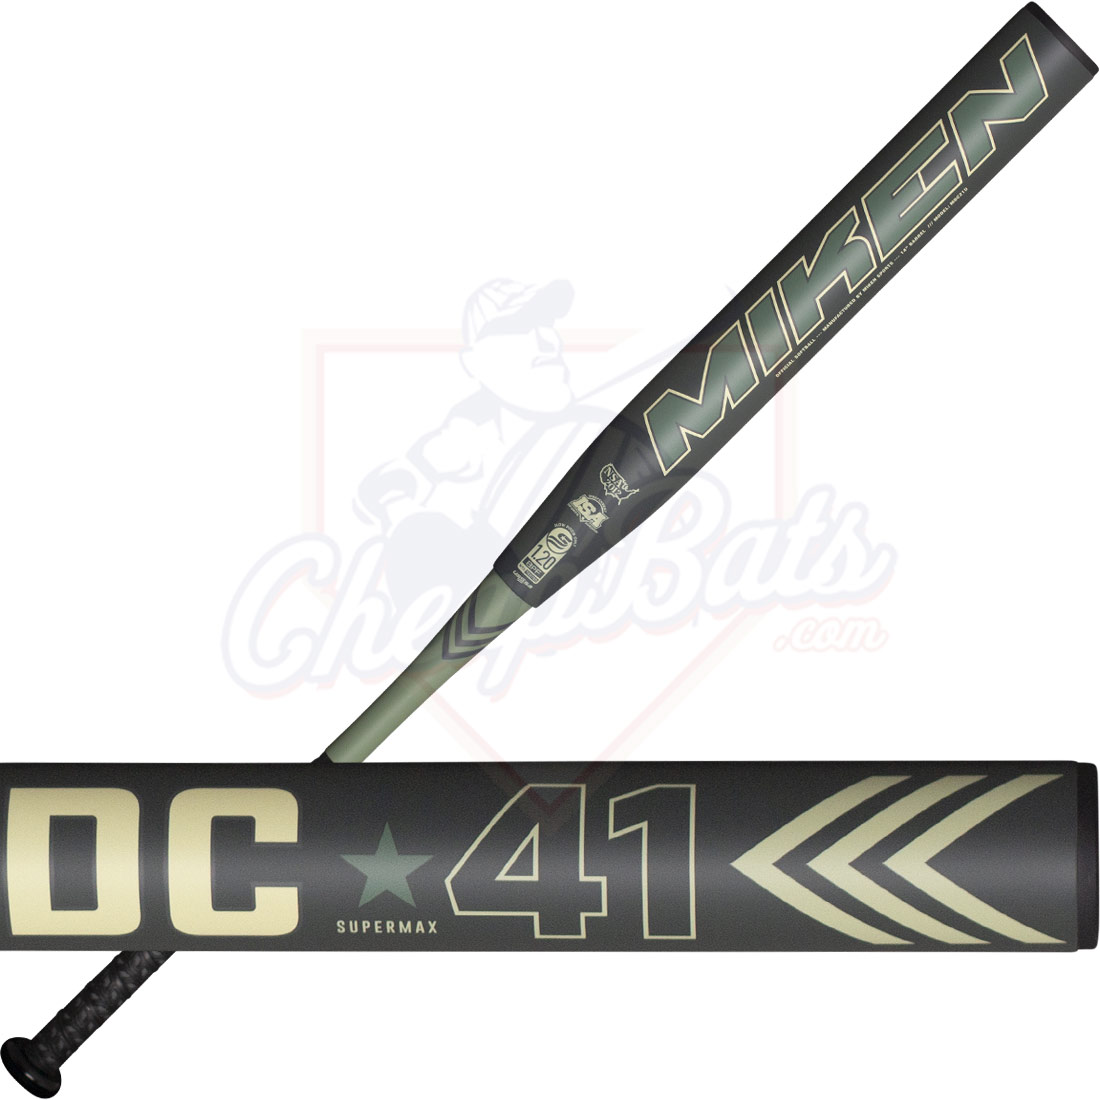 2021 Miken DC41 Slowpitch Softball Bat Supermax USSSA MDC21U